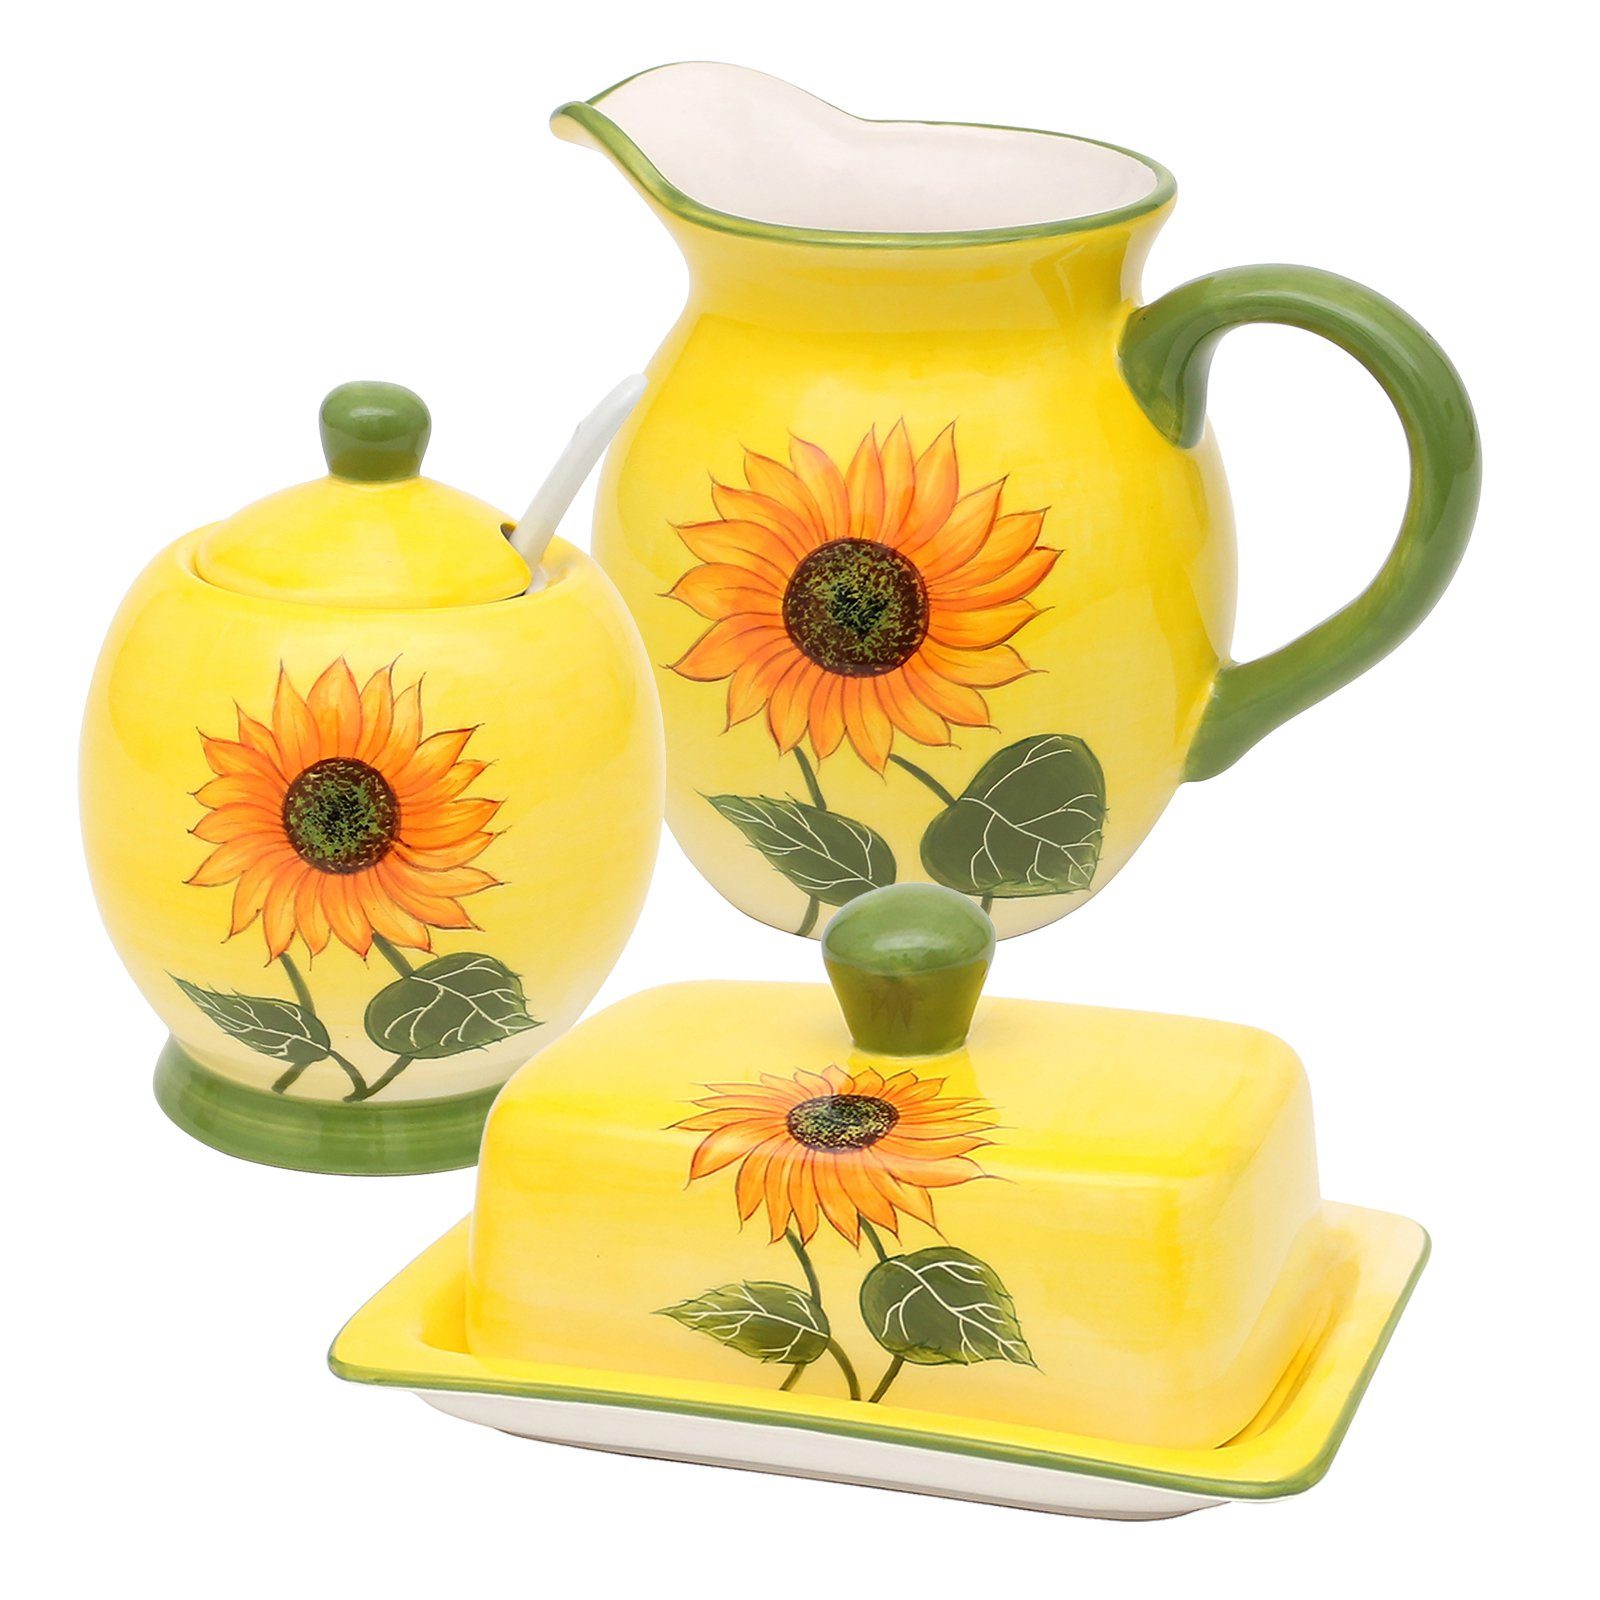 Neuetischkultur Frühstücks-Geschirrset Keramik-Set 3-teilig Keramik, Sahnekännchen (3-tlg), Zuckerdose Butterdose Frühstücksset Sonnenblume